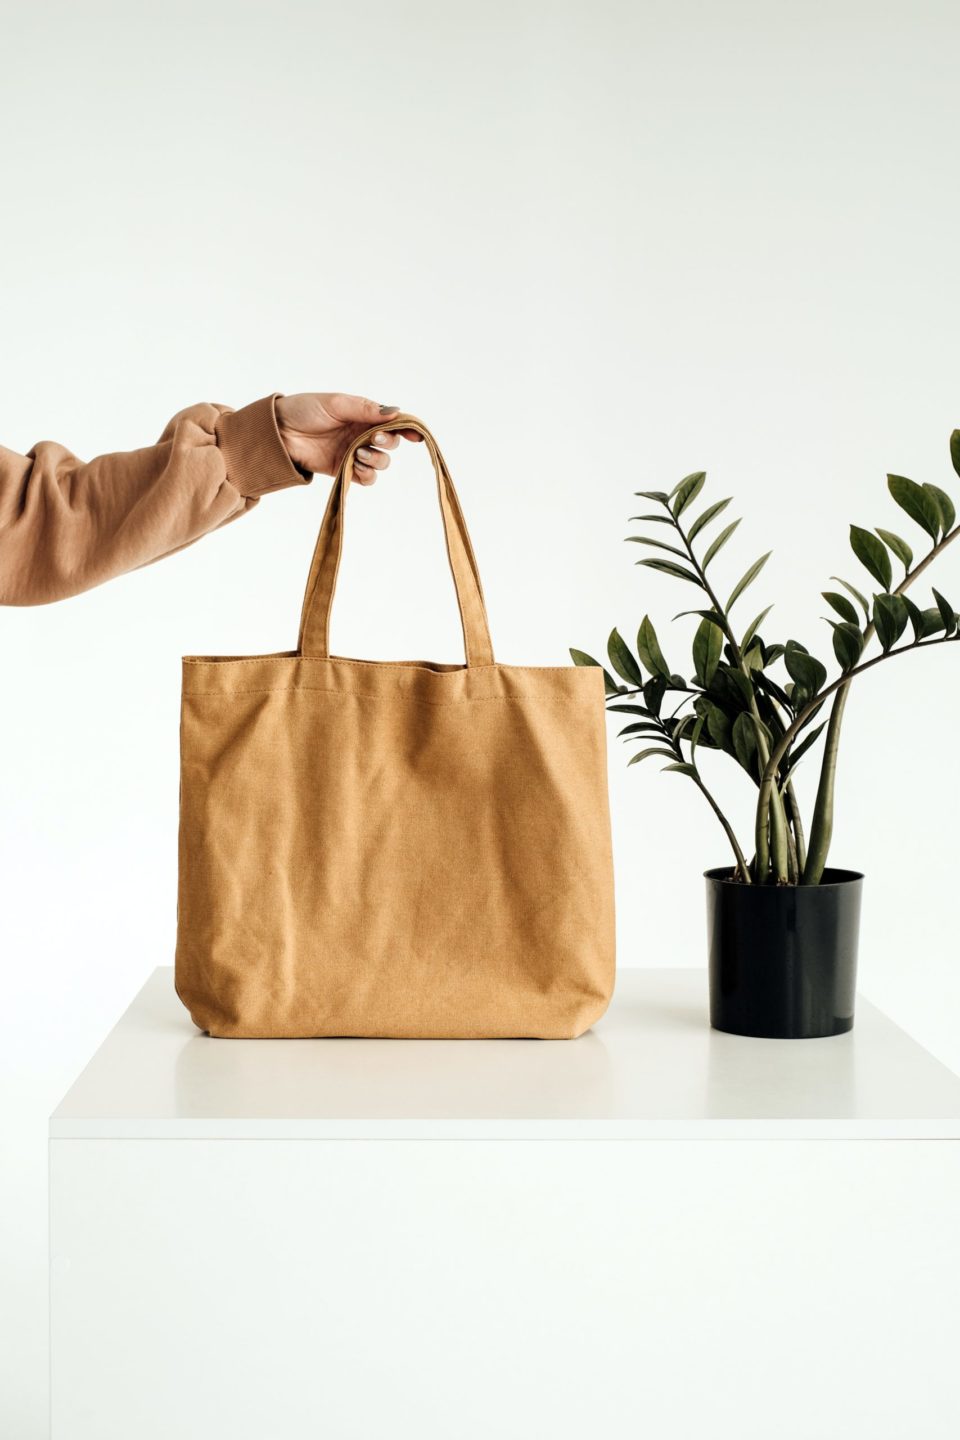 ¿Cómo se fabrican las bolsas sostenibles?